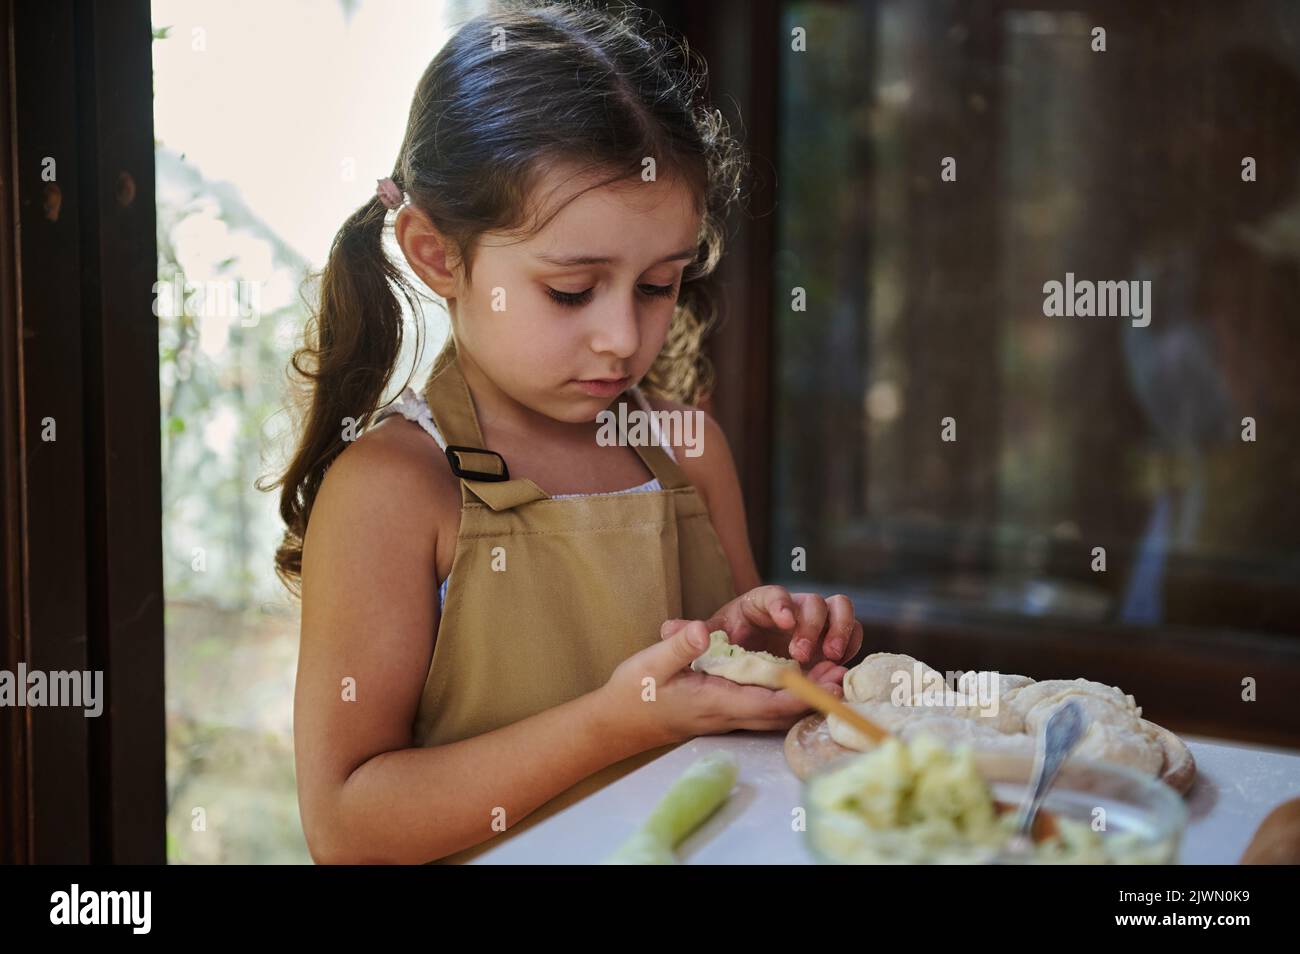 Bella cuoca, adorabile bambina con due ponytail, nel grembiule dello chef purè di patate e formine gnocchi Foto Stock